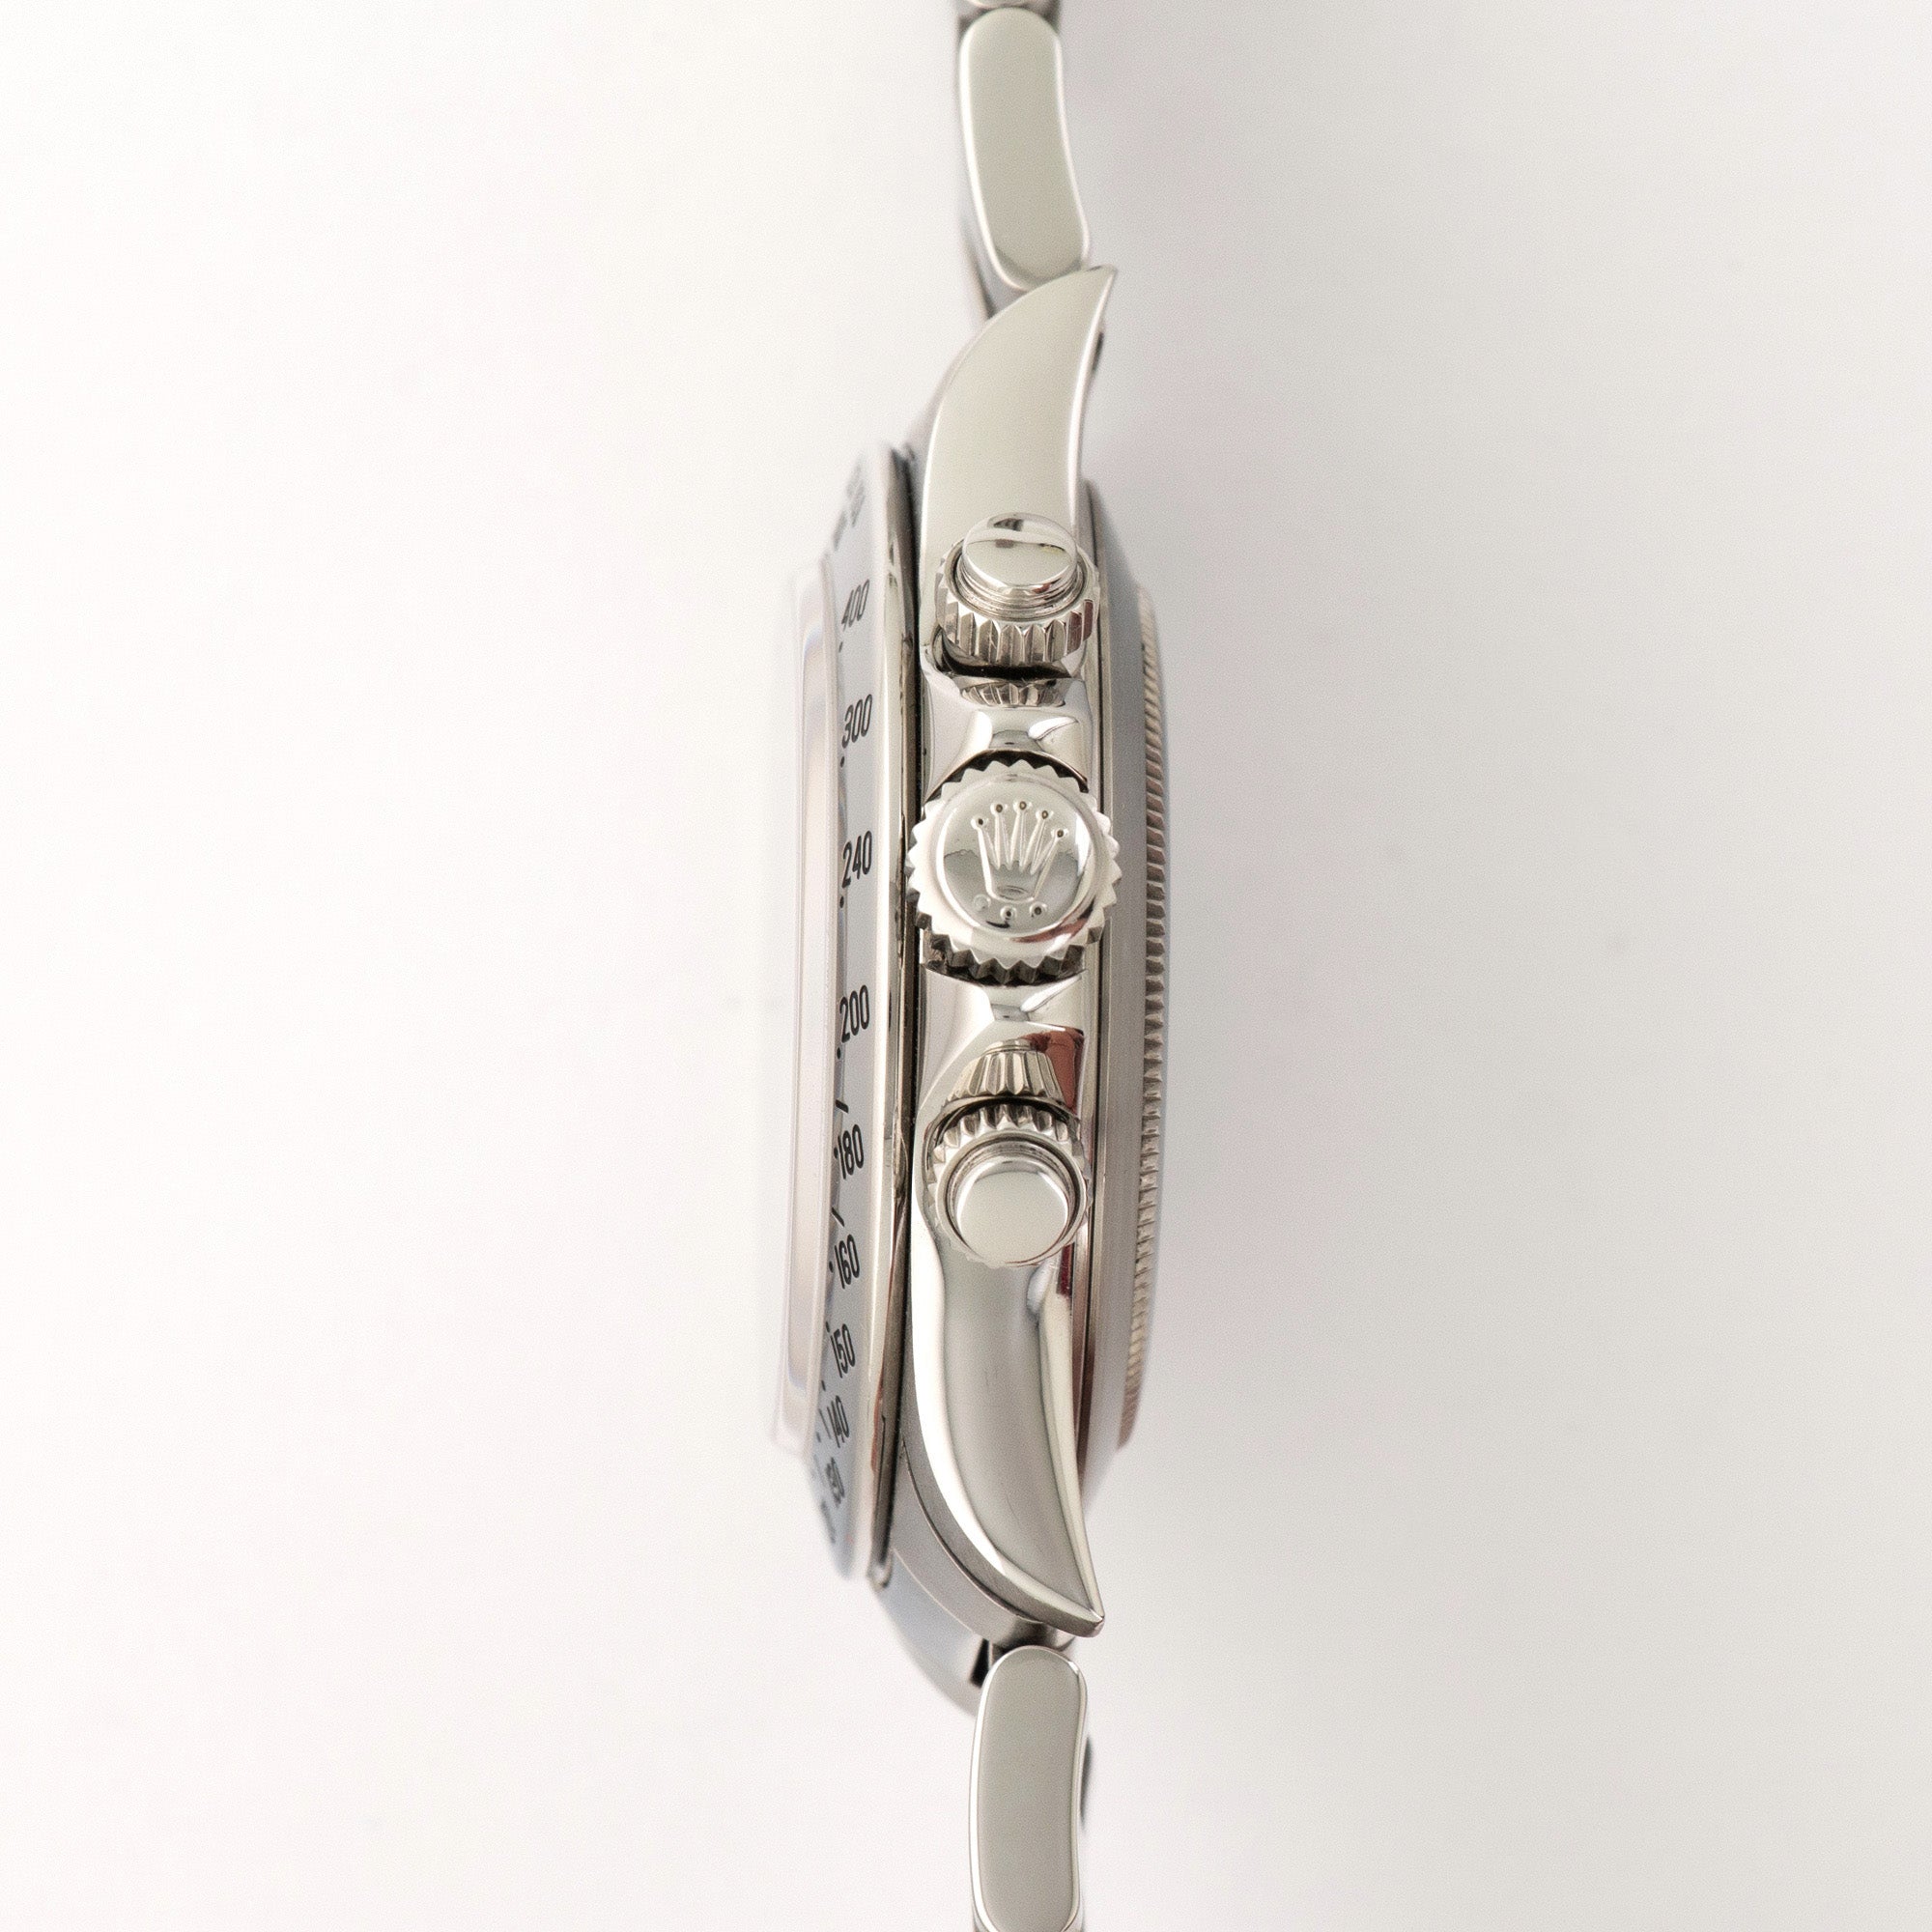 Rolex Cosmograph Zenith Daytona Watch Ref. 16520